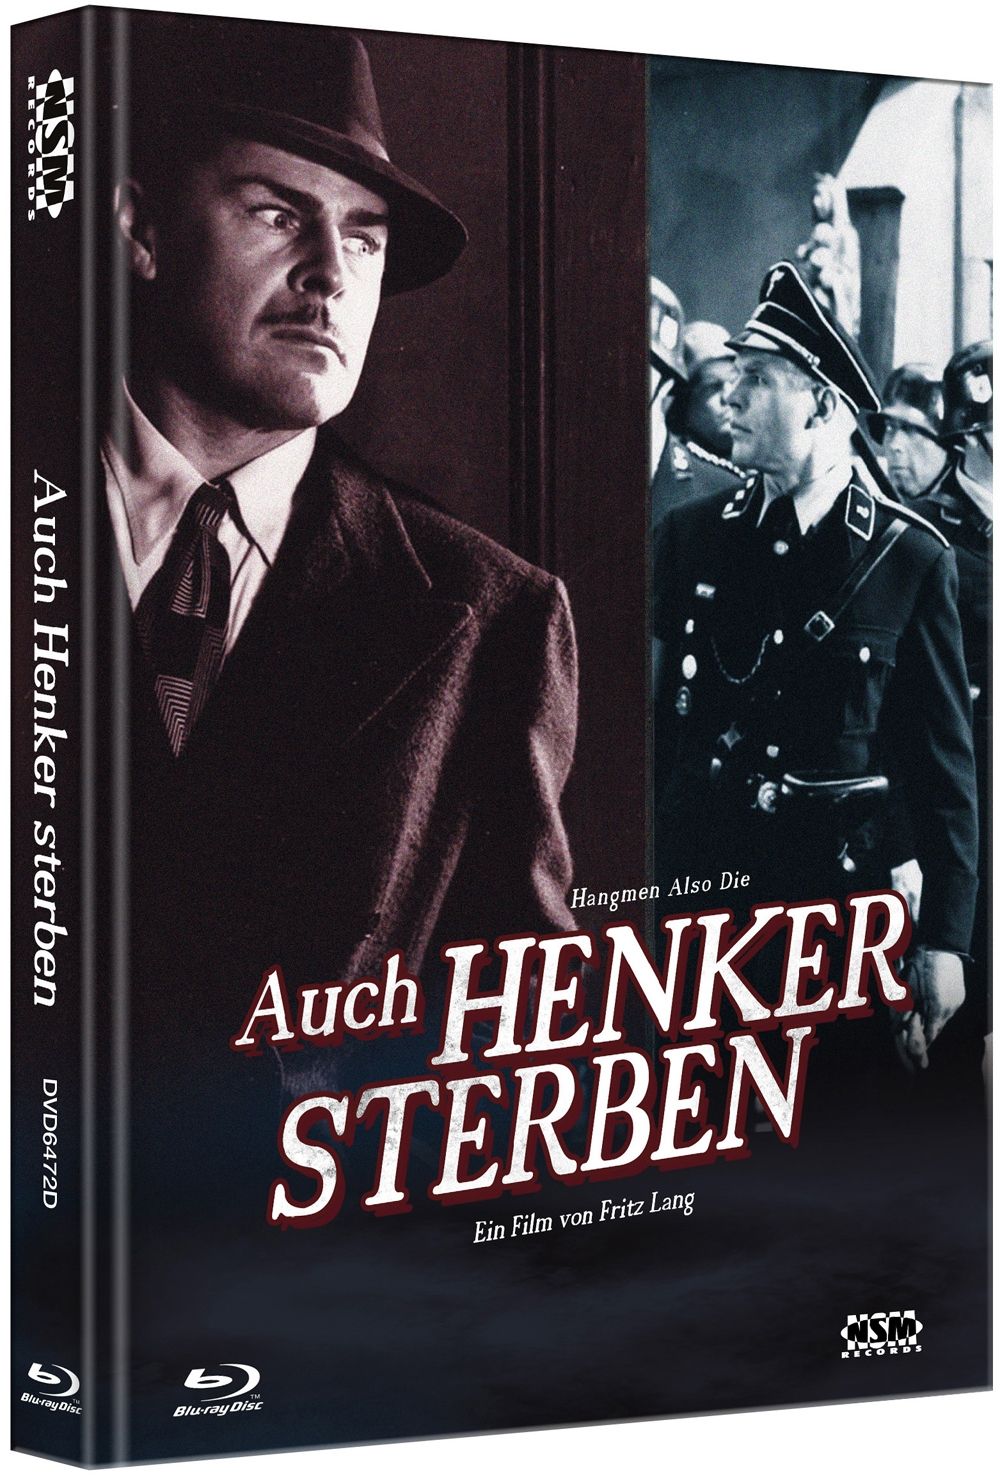 Auch Henker sterben (Lim. Uncut Mediabook - Cover D) (DVD + BLURAY)